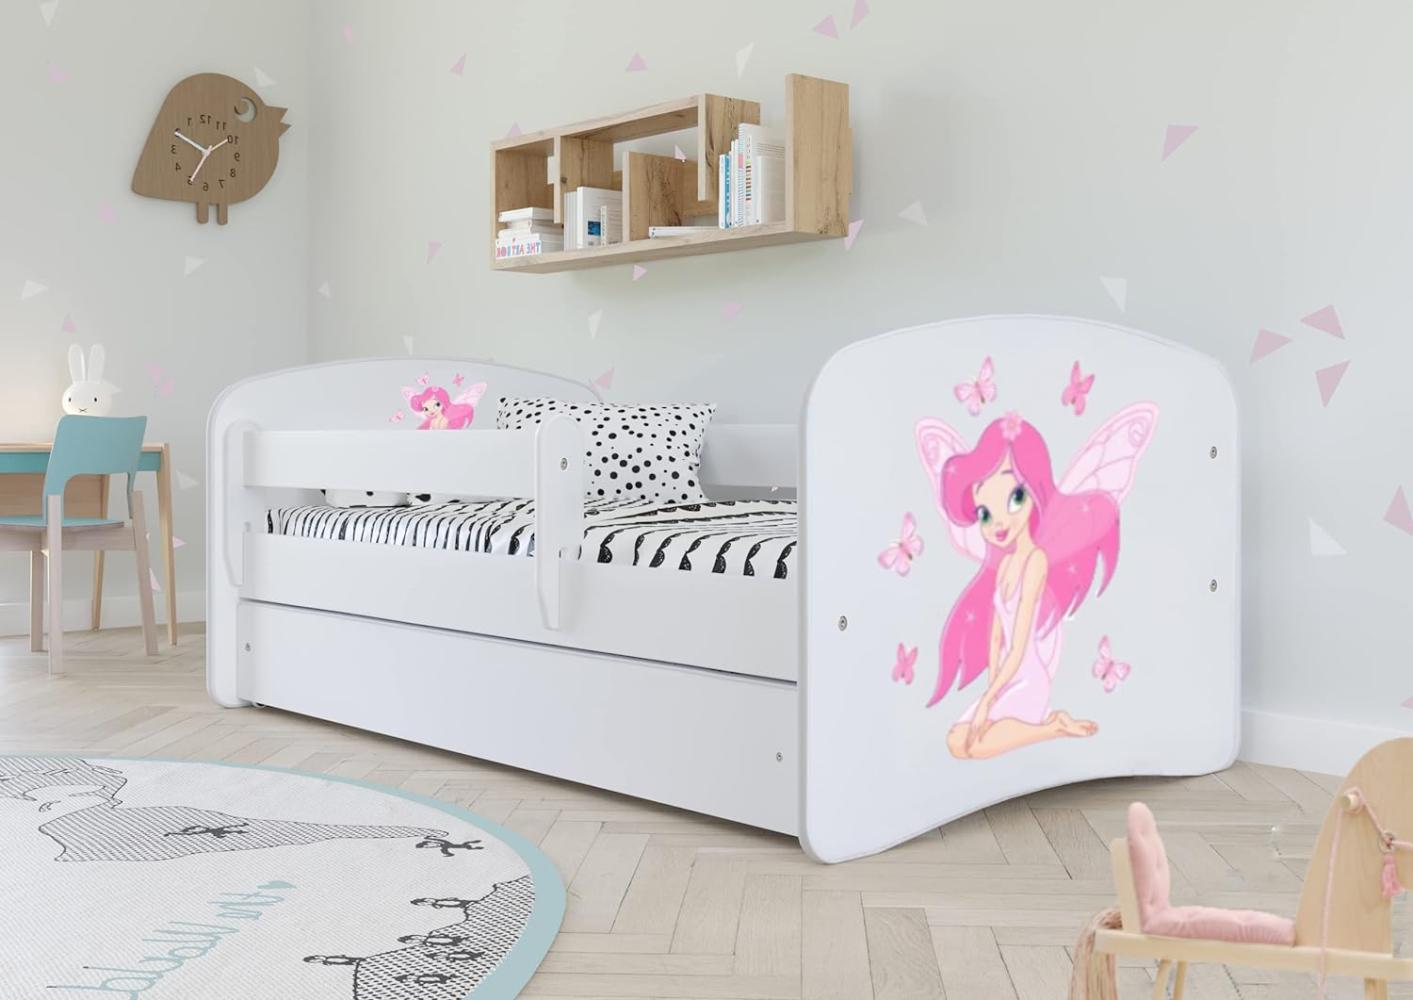 Kocot Kids 'Fee mit Schmetterlingen' Einzelbett weiß 80x160 cm inkl. Rausfallschutz, Matratze, Schublade und Lattenrost Bild 1